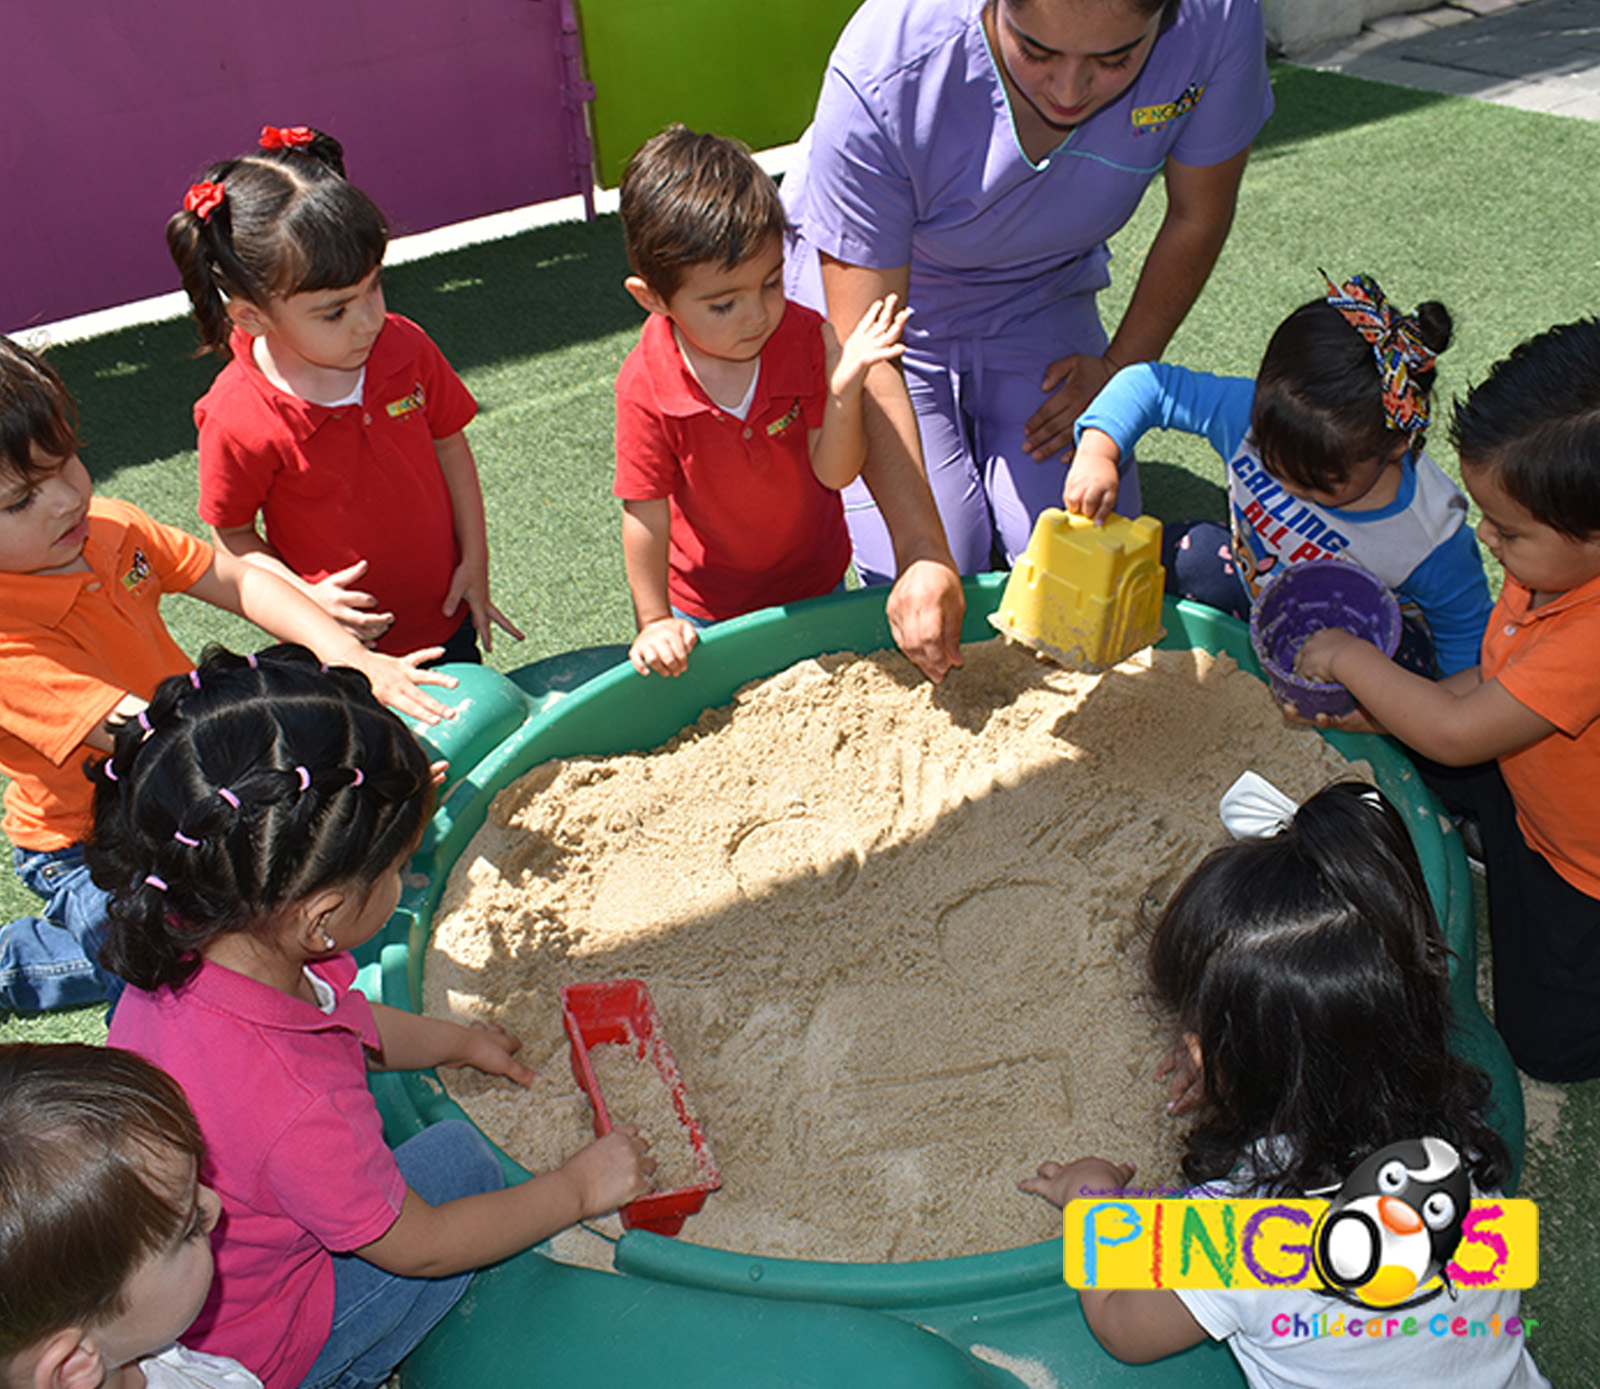 Pingos Childcare Center